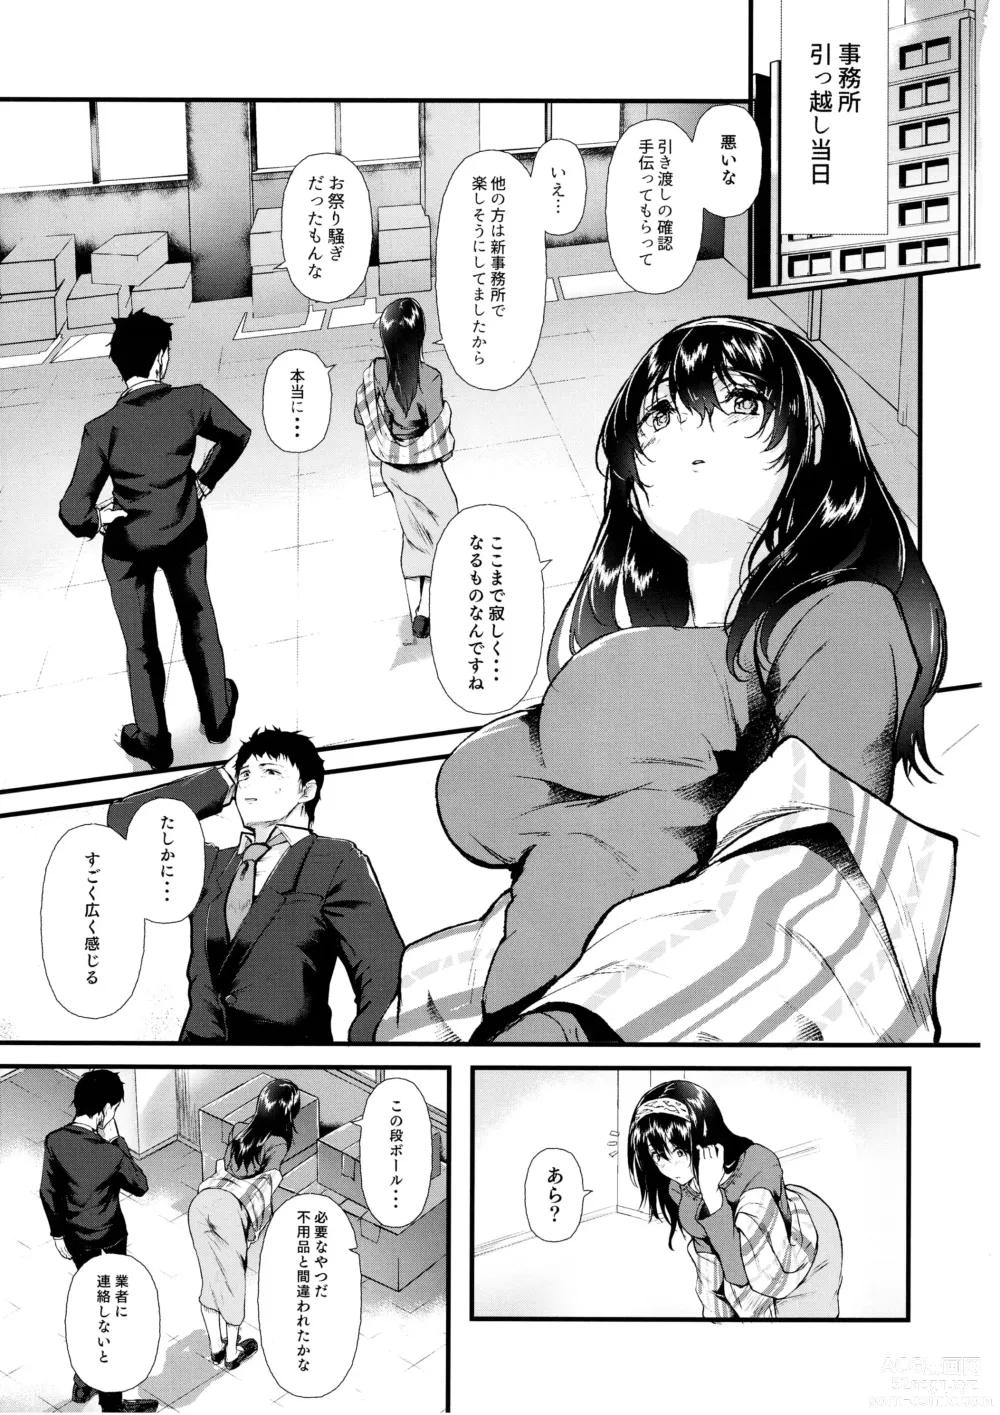 Page 2 of doujinshi Omoide wa Itsumo Kagayaite